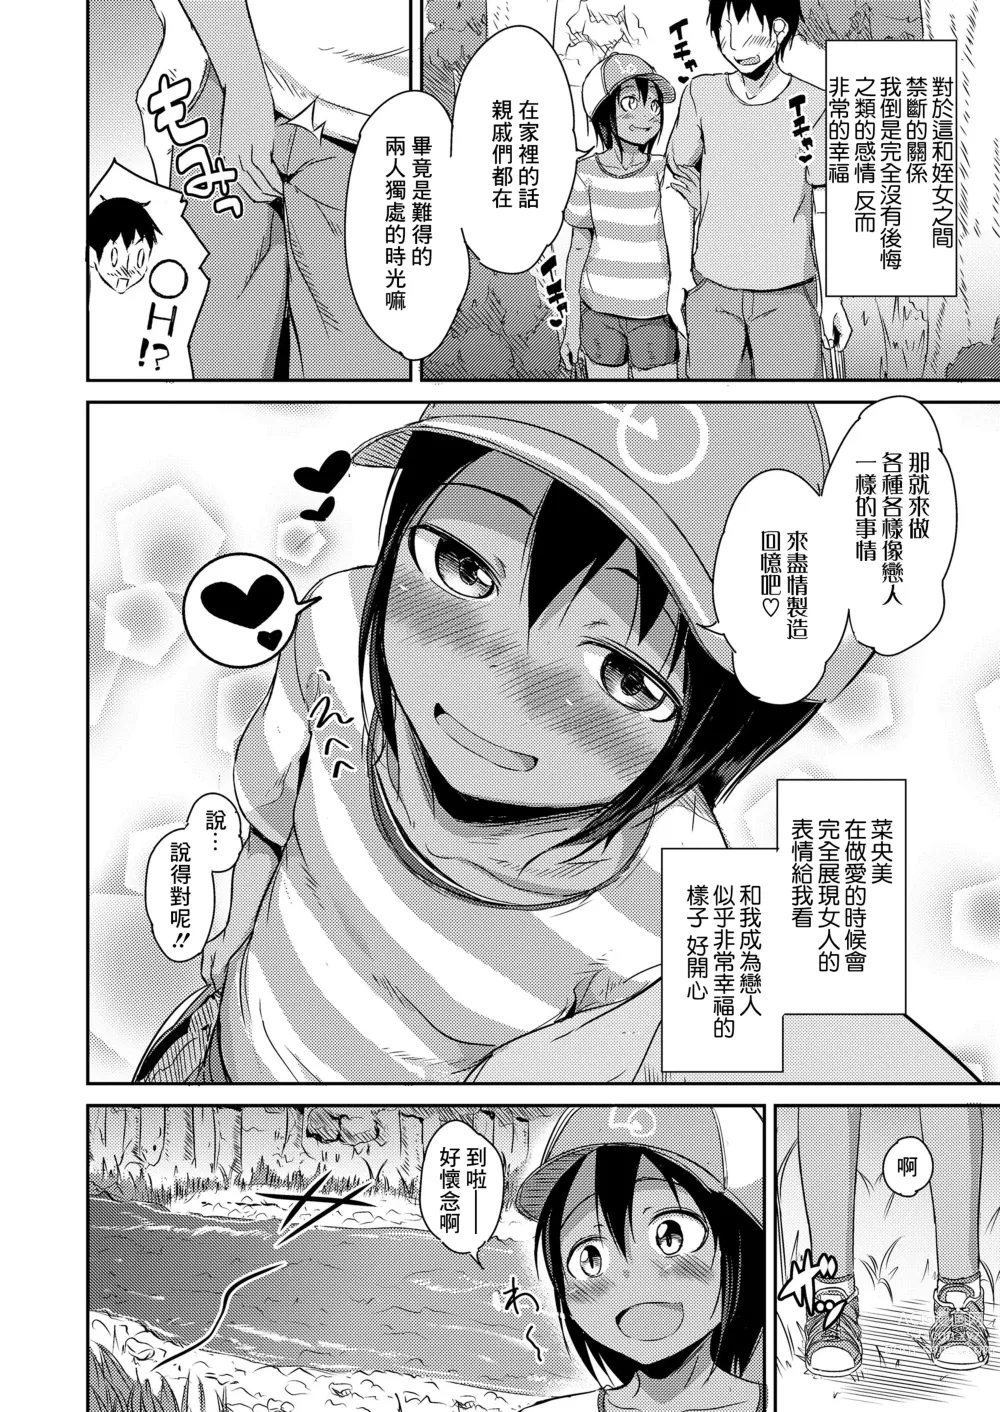 Page 2 of manga Kawabe de Mei Trap